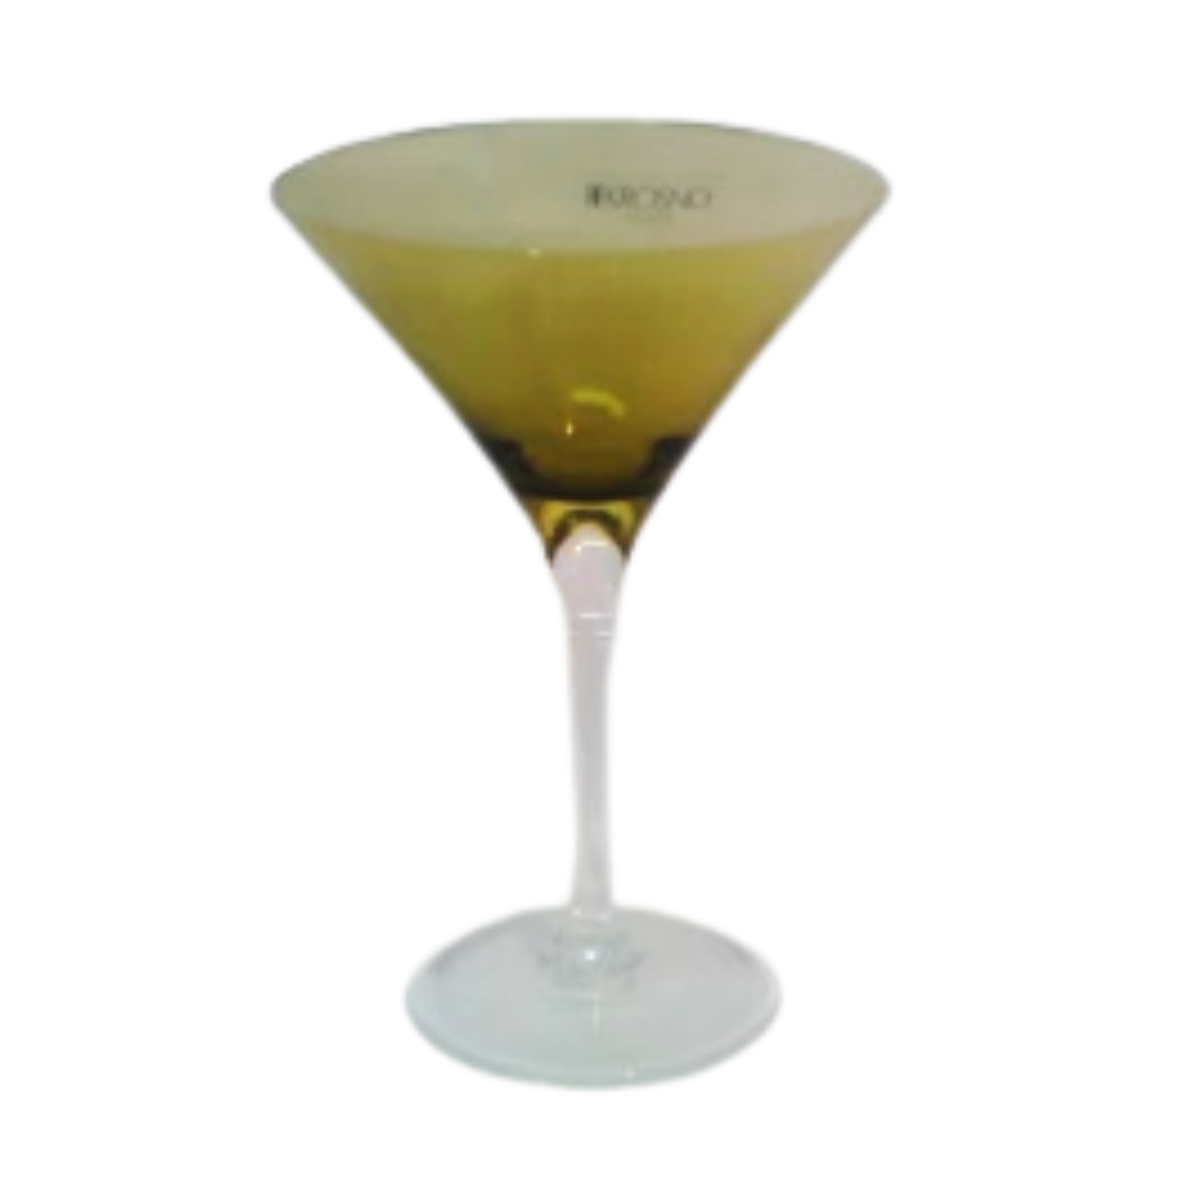 Copa Martini en color oliva 200 ml. aprox. 07 5121 0200 marca Krosno - ANFORAMA (Todo para mi Cocina)